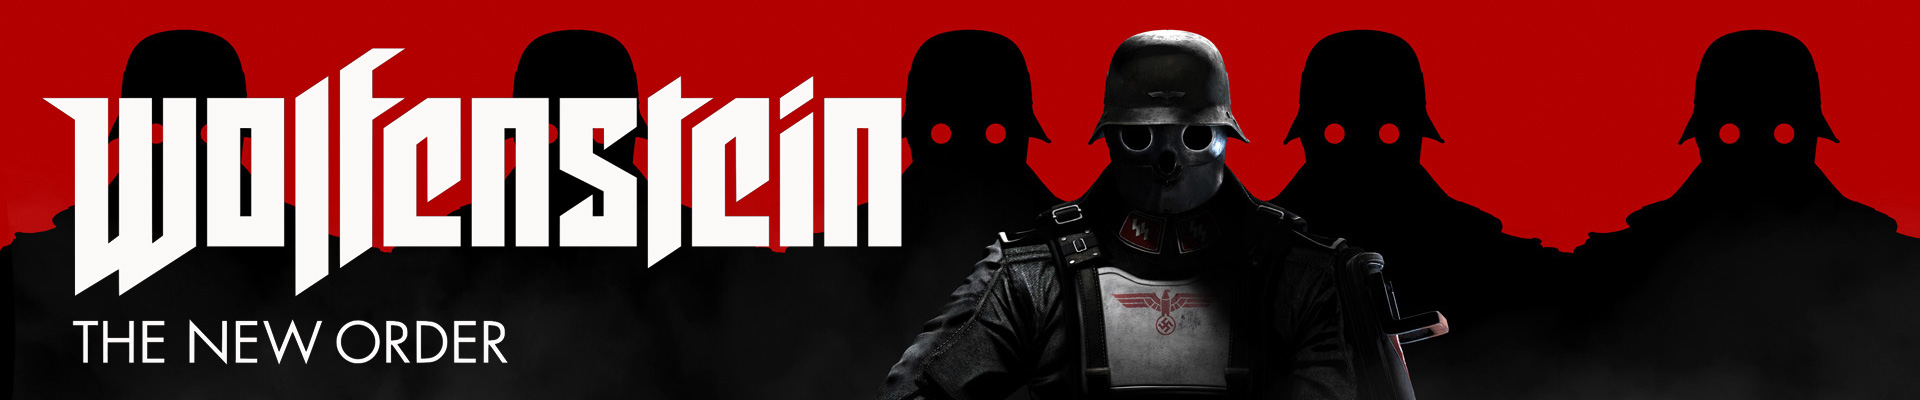 Восхищаясь: Wolfenstein: The New Order. Get Psyched!